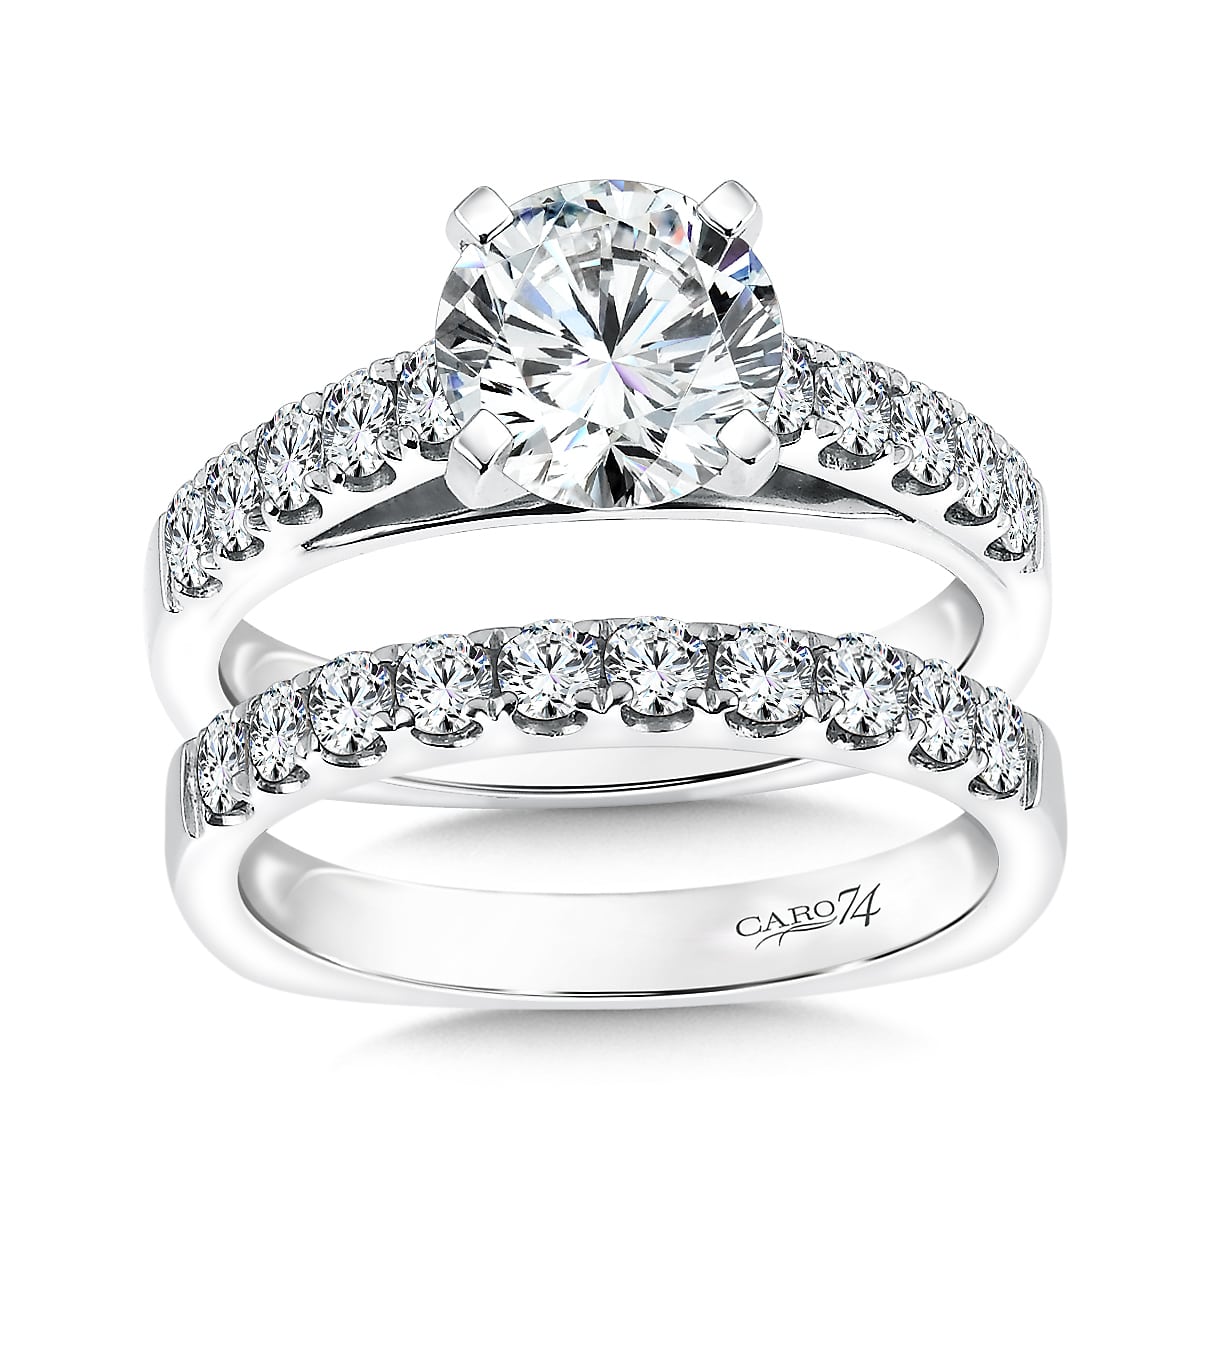 Custom Round Engagement Rings